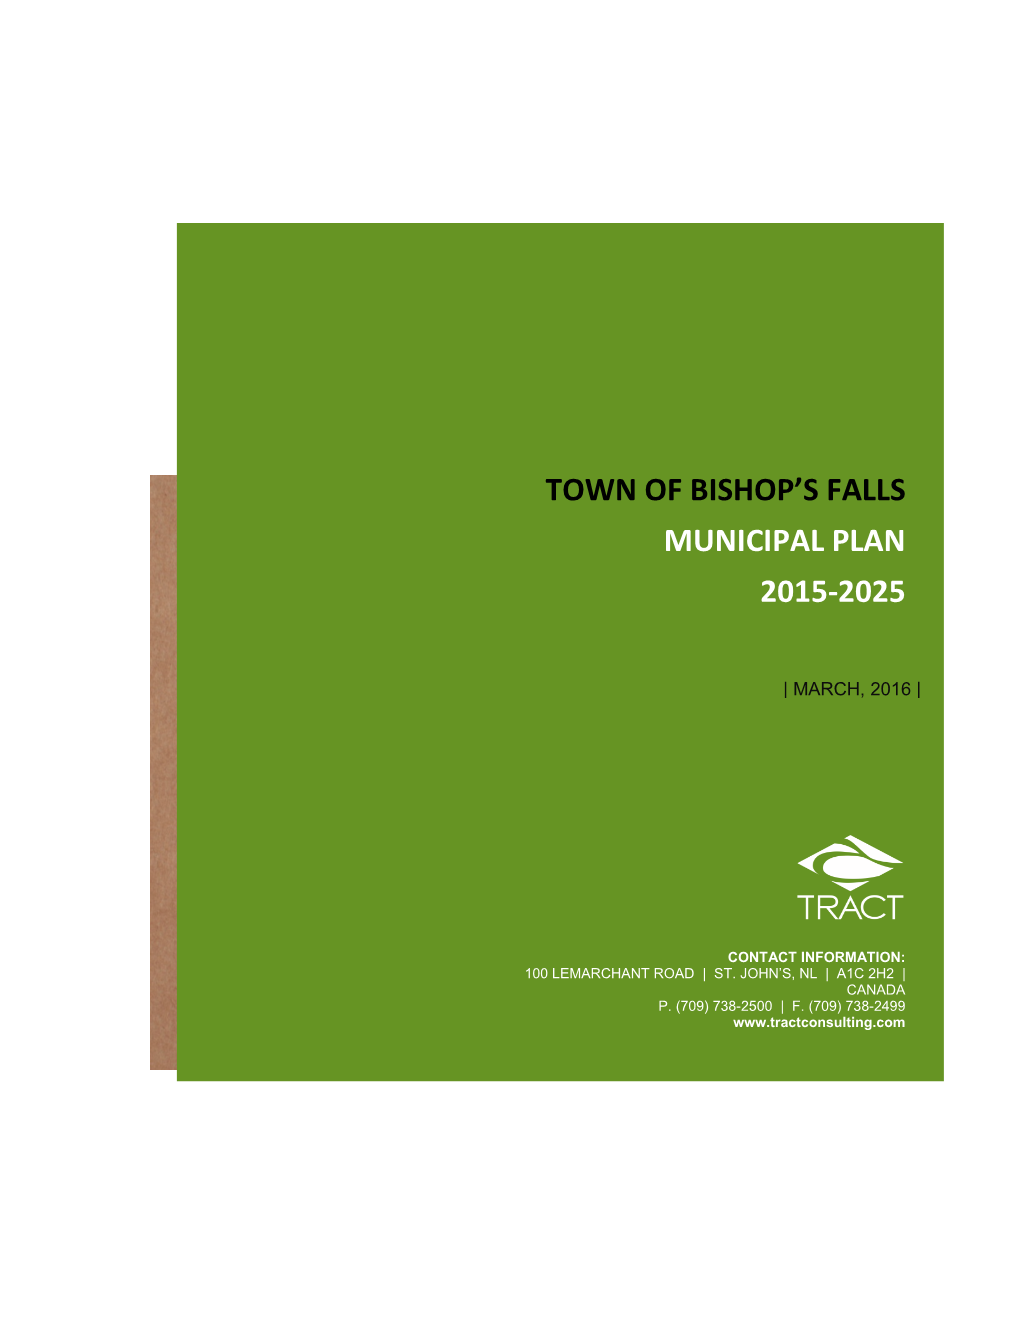 Town of Bishop's Falls Municipal Plan 2015-2025